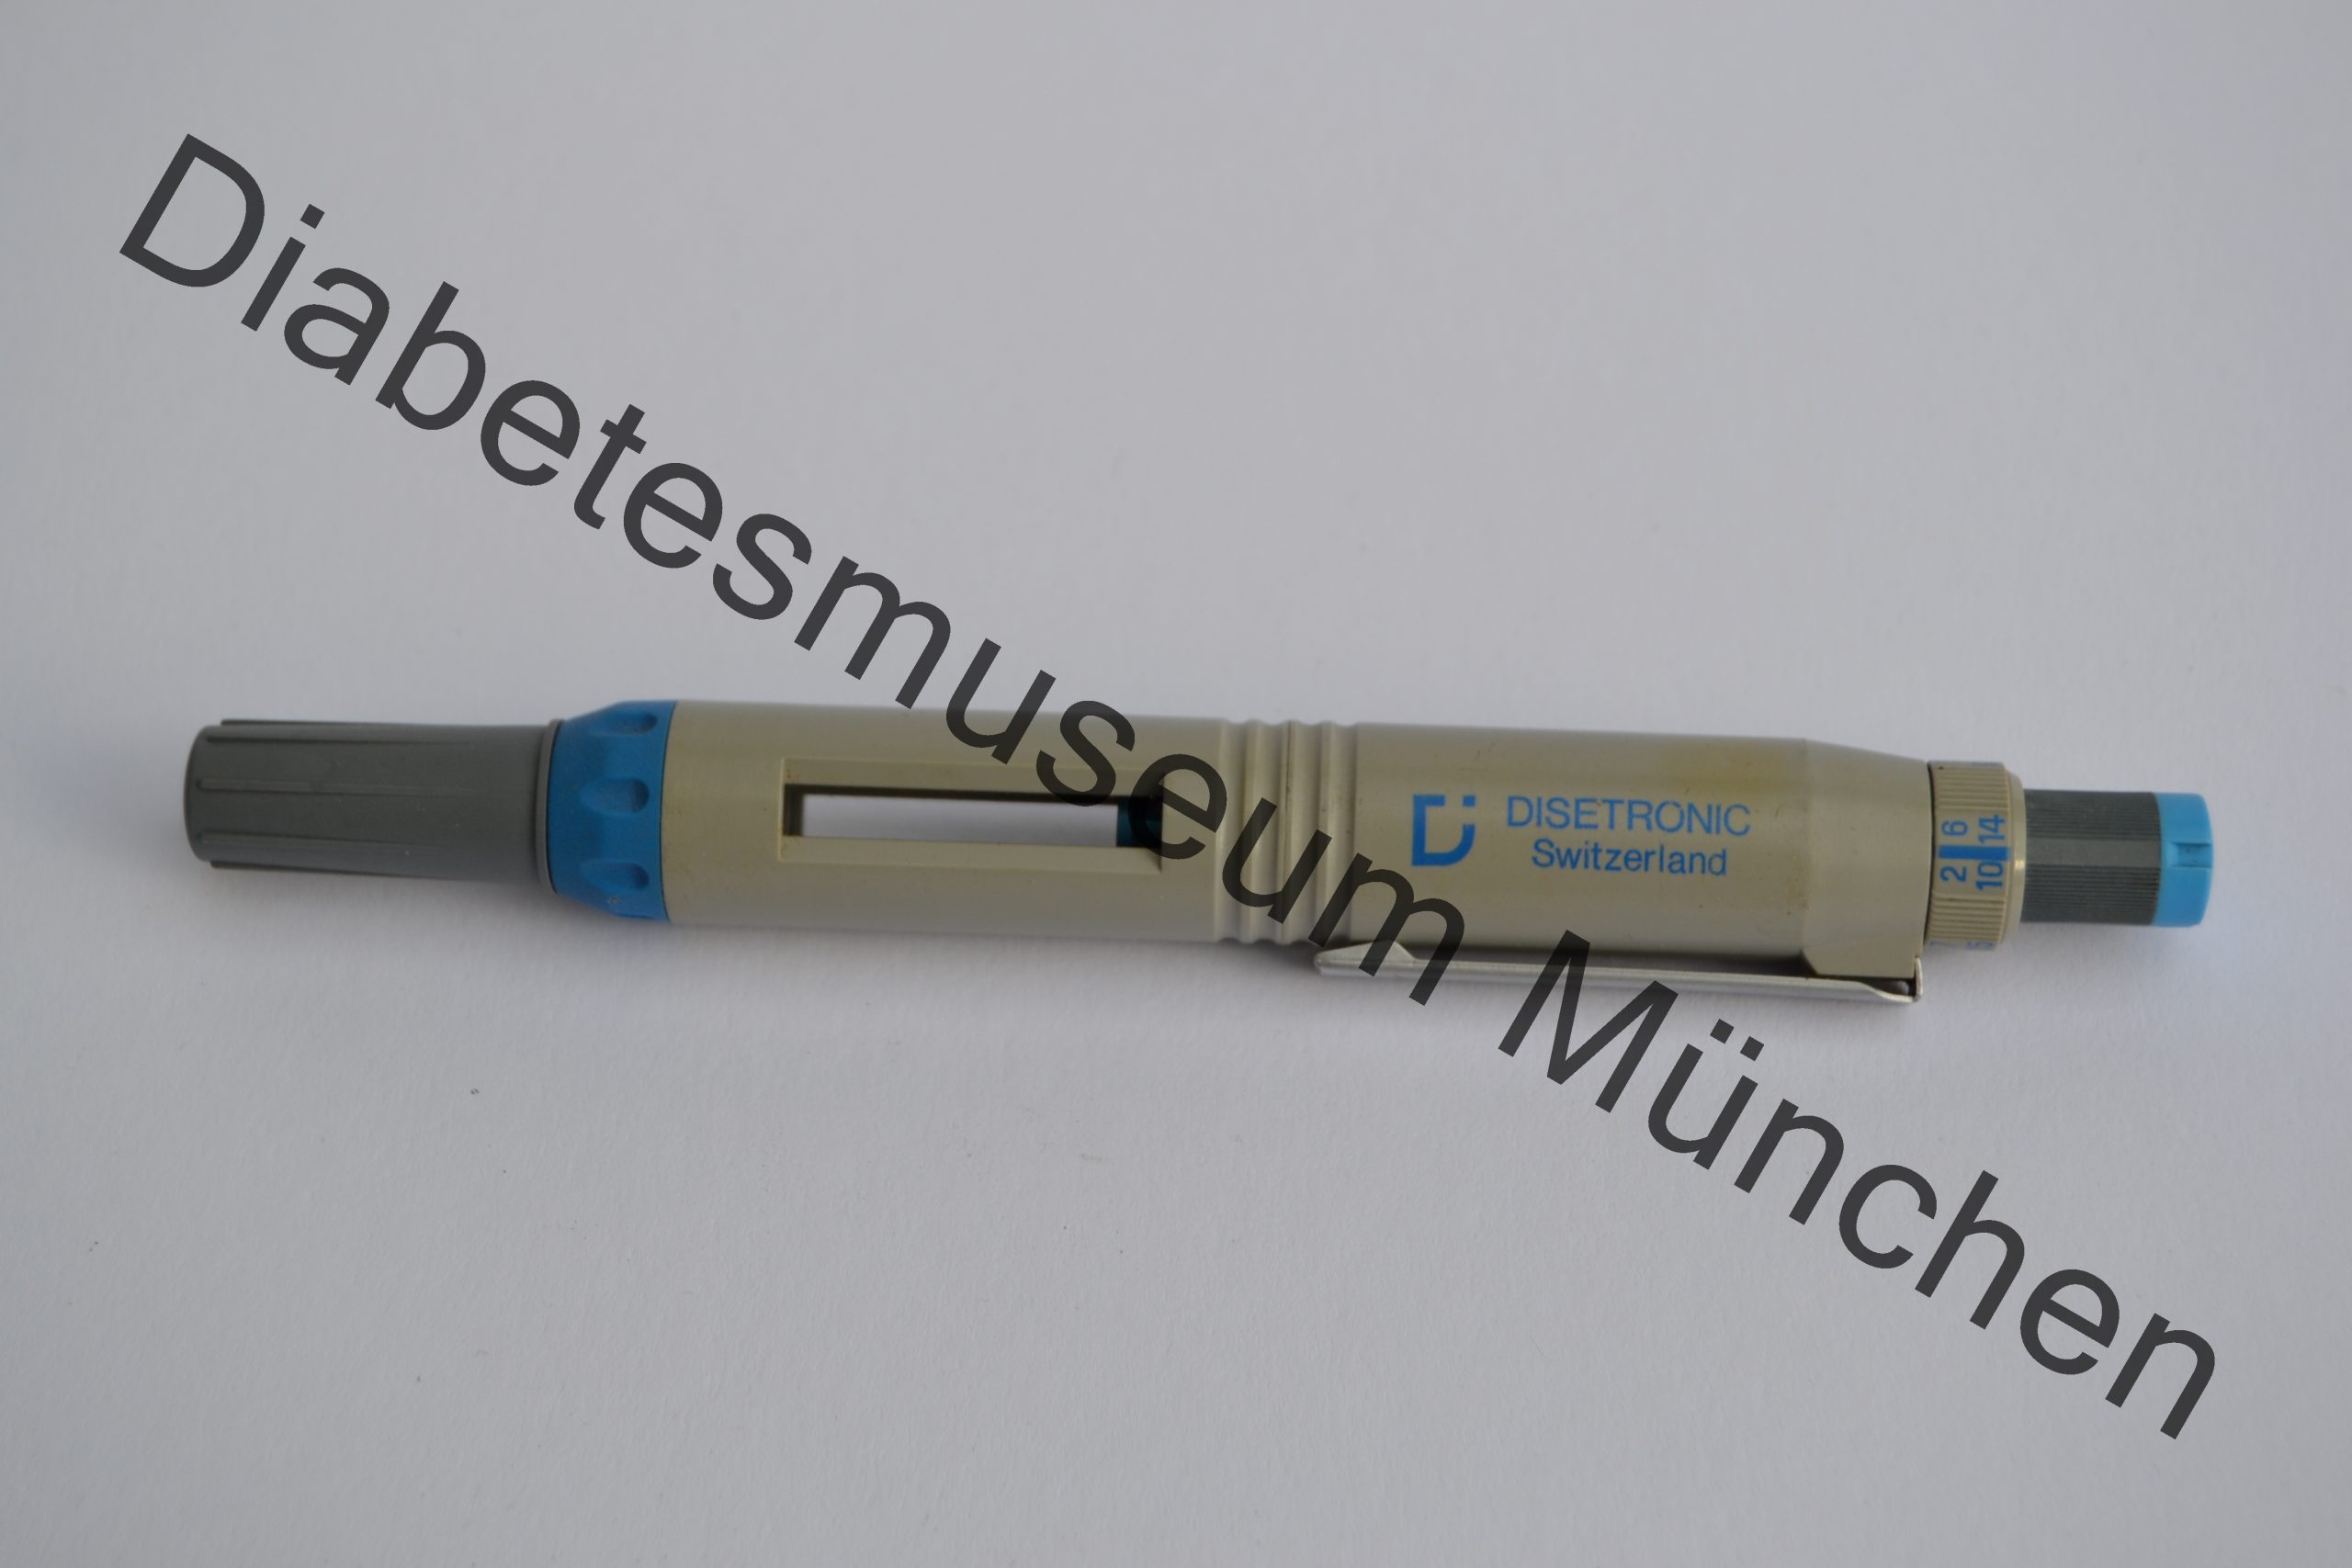 Disetronic Pen, 1995